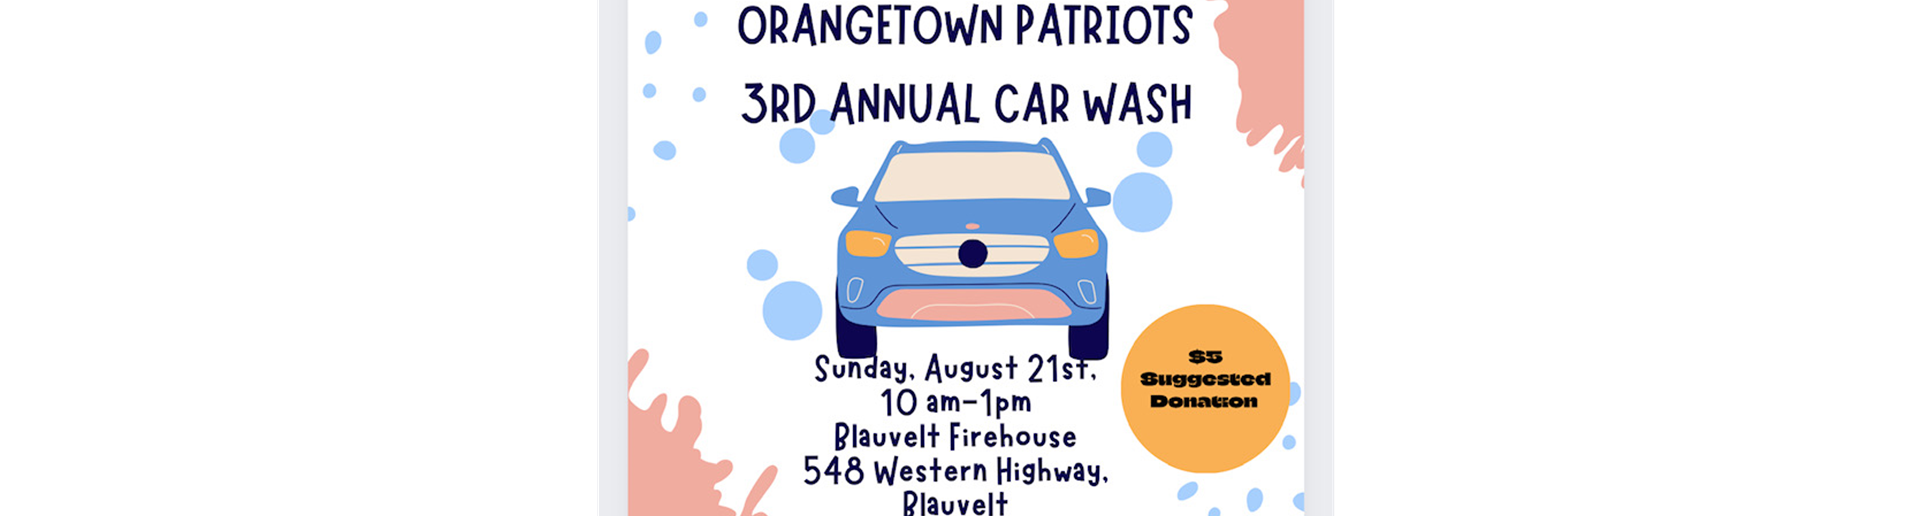 Orangetown Patriots 3rd Annual Car Wash!